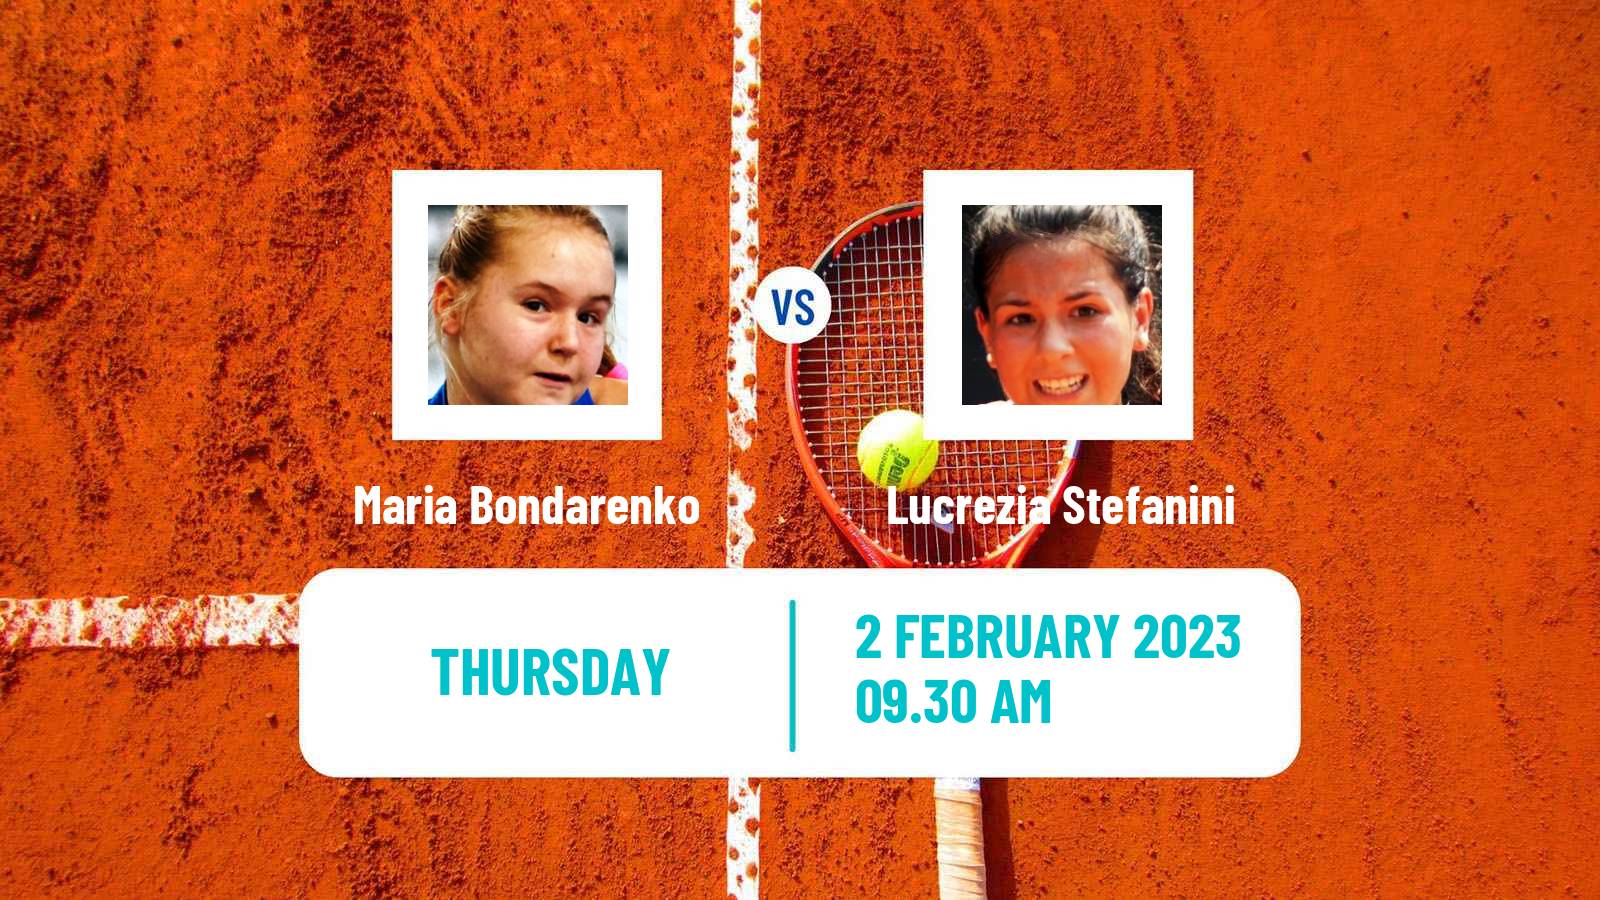 Tennis ITF Tournaments Maria Bondarenko - Lucrezia Stefanini